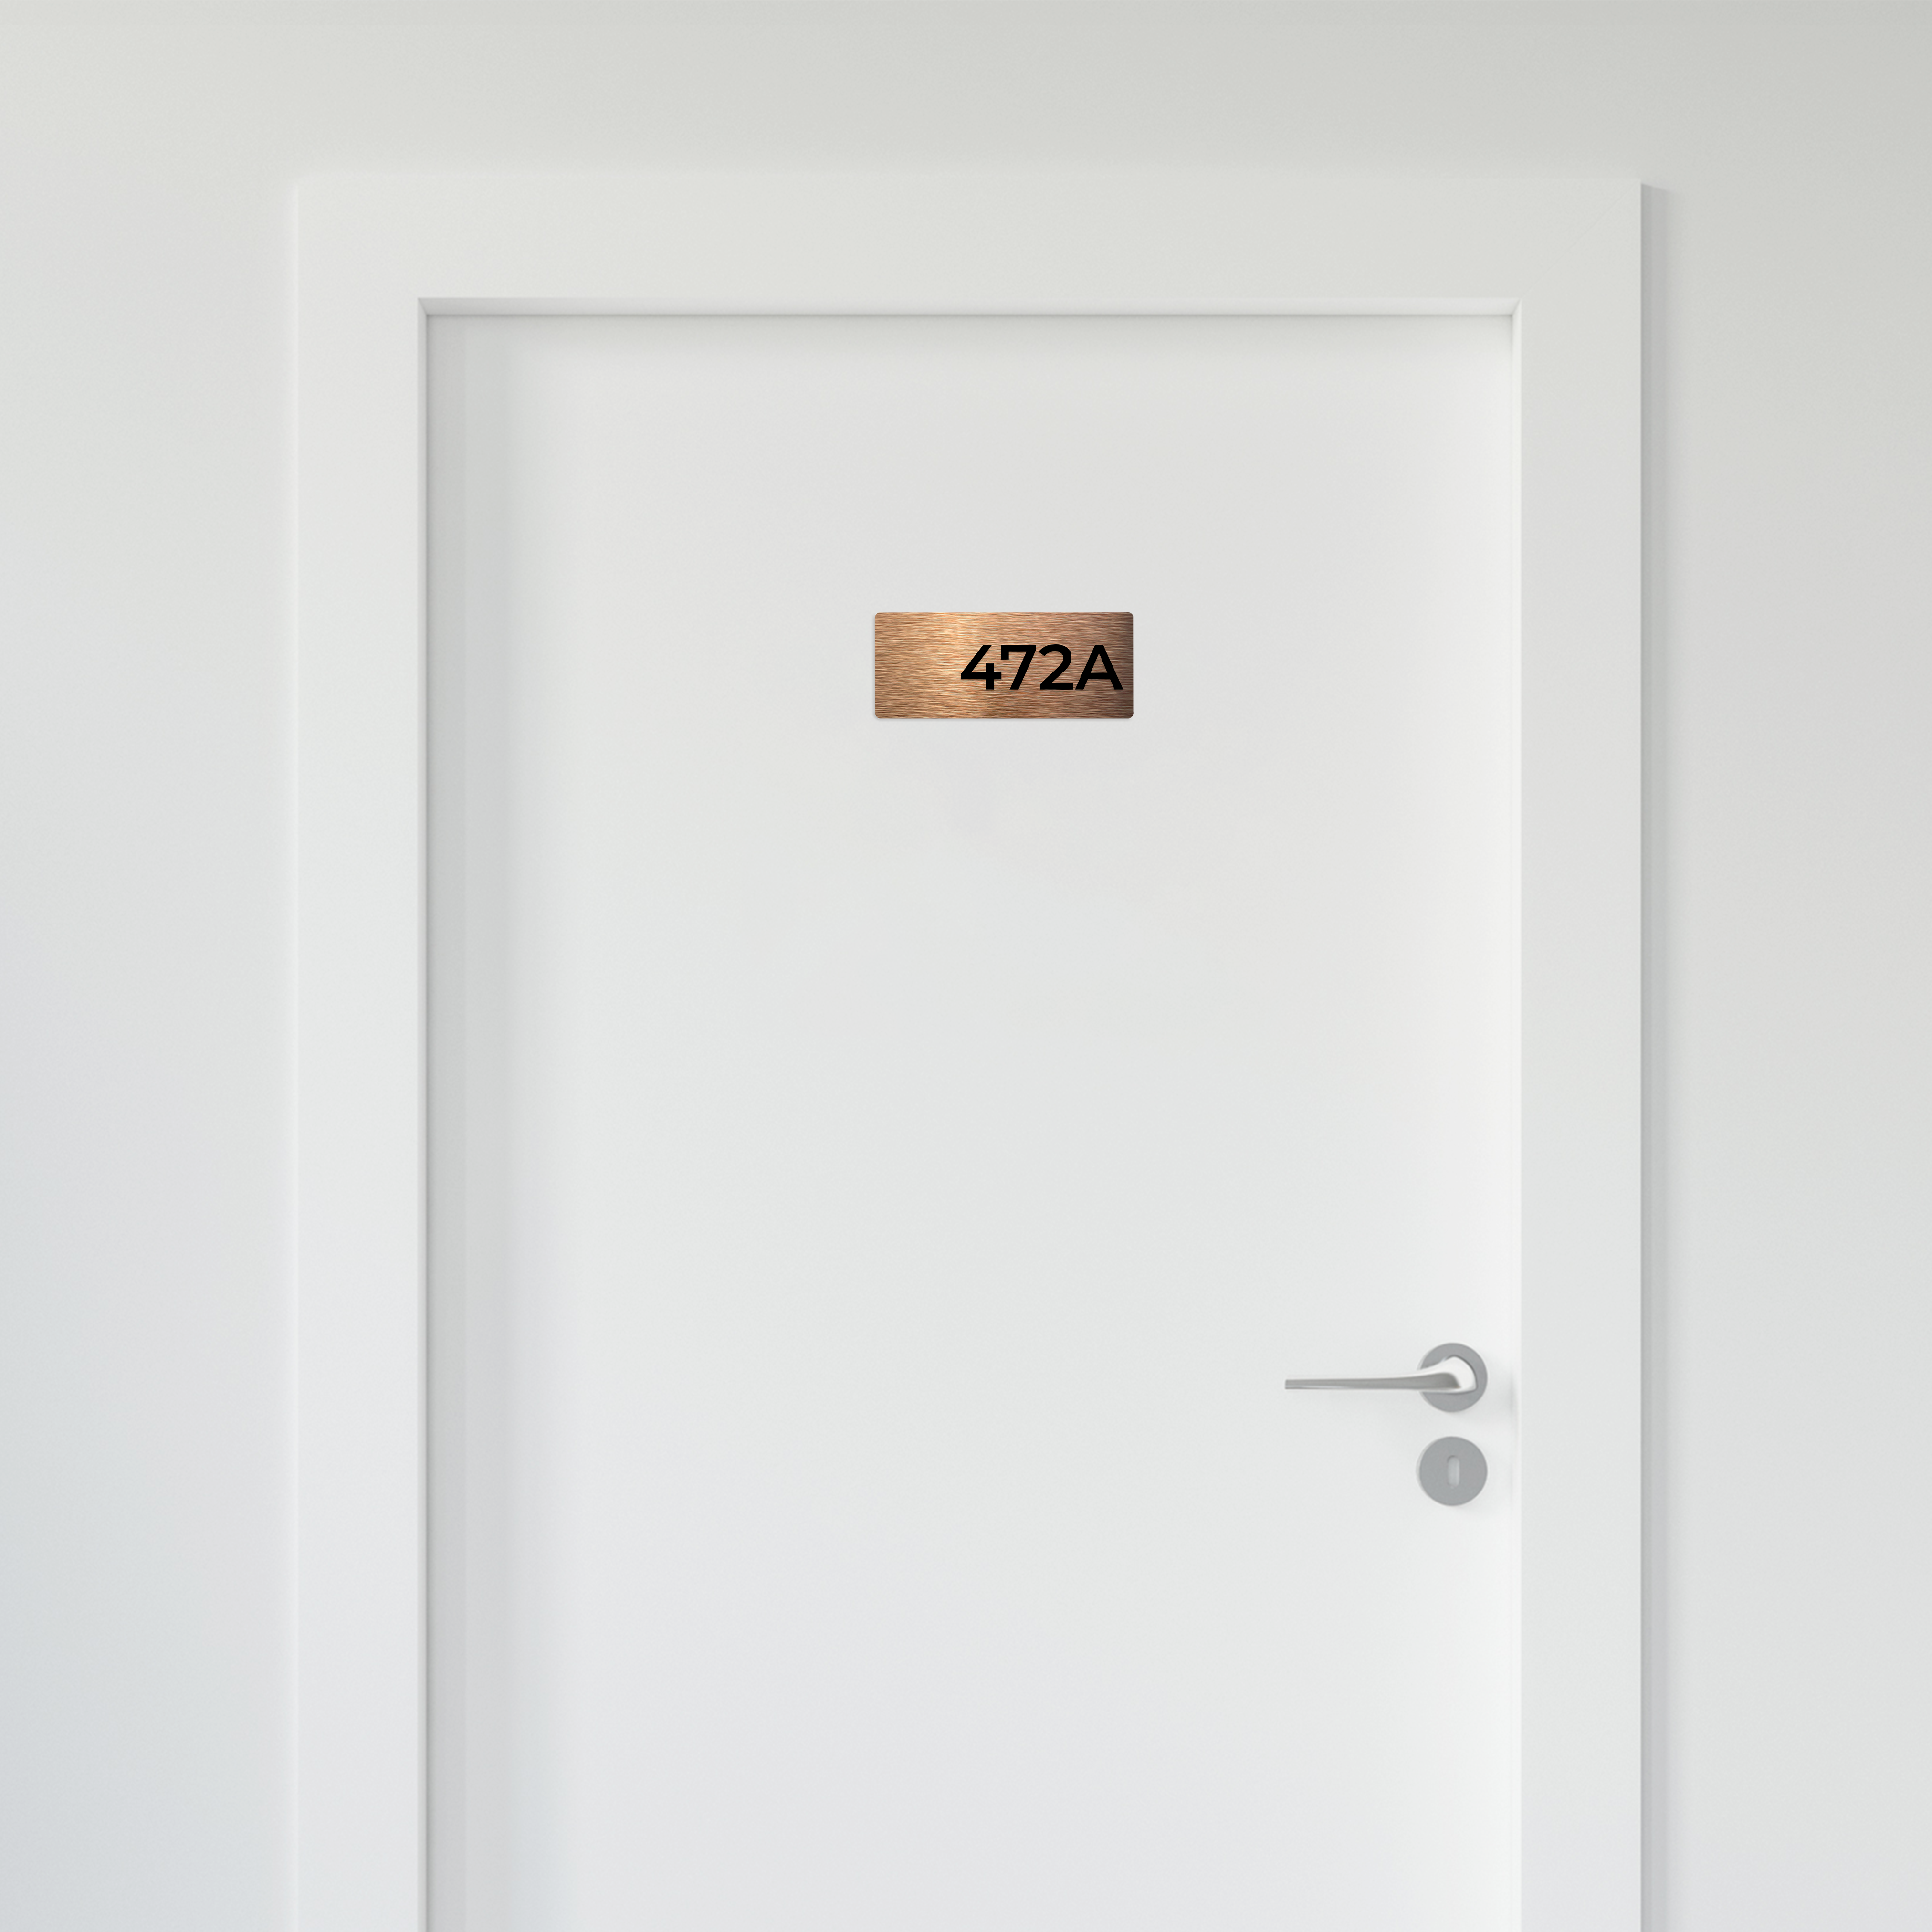 BRONZE APARTMENT NUMBER SIGNS - ALUMADESIGNCO Door Signs - Custom Door Signs For Business & Office